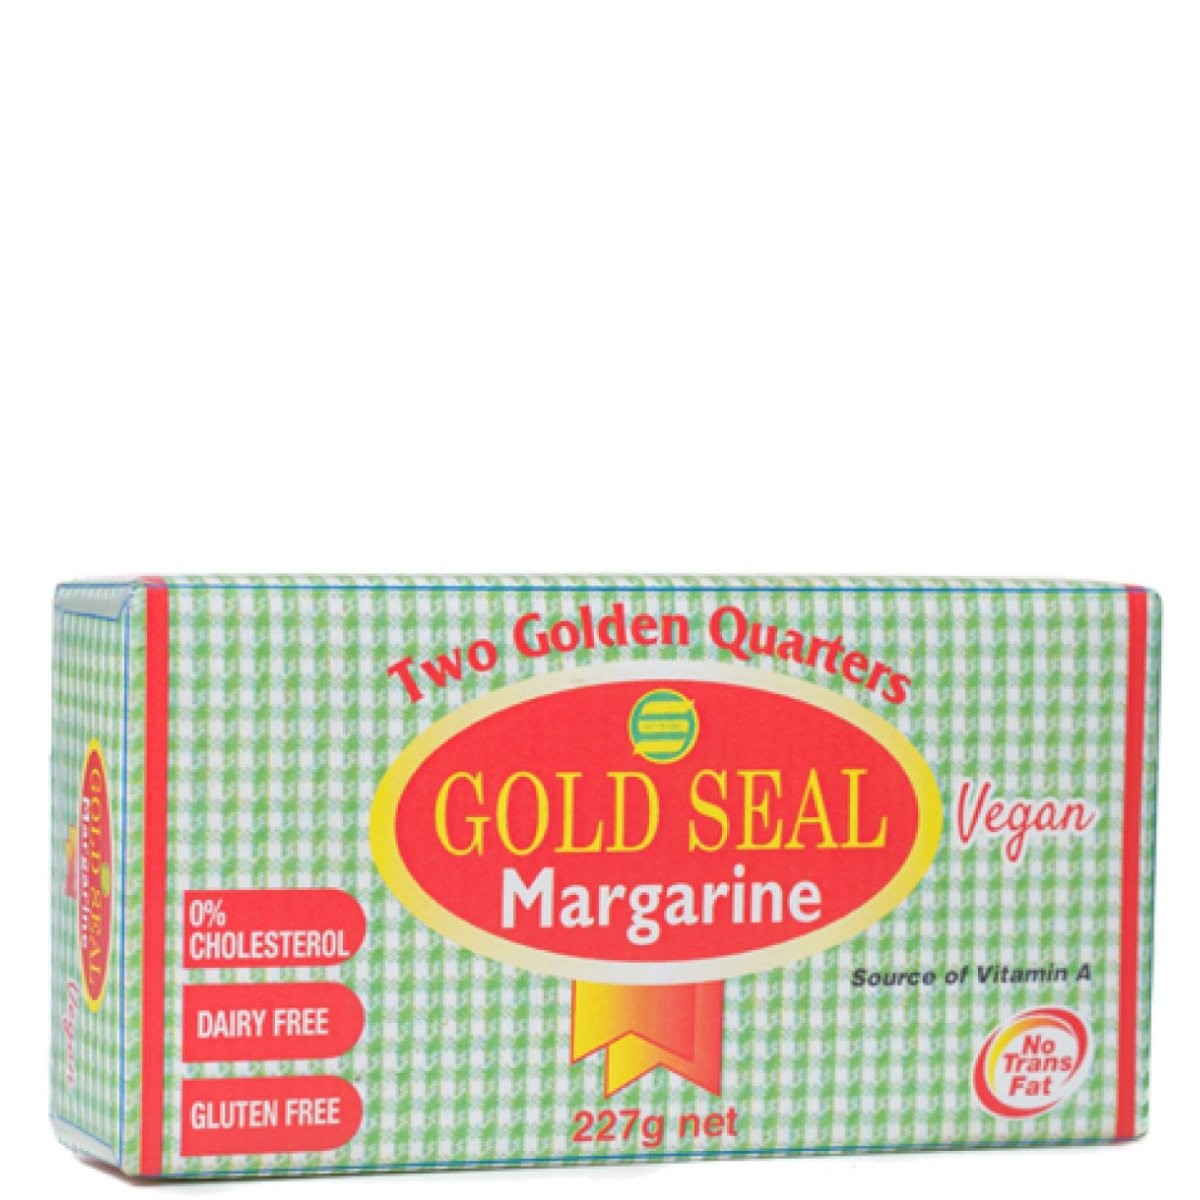 GOLD SEAL MARGARINE VEGAN 227g